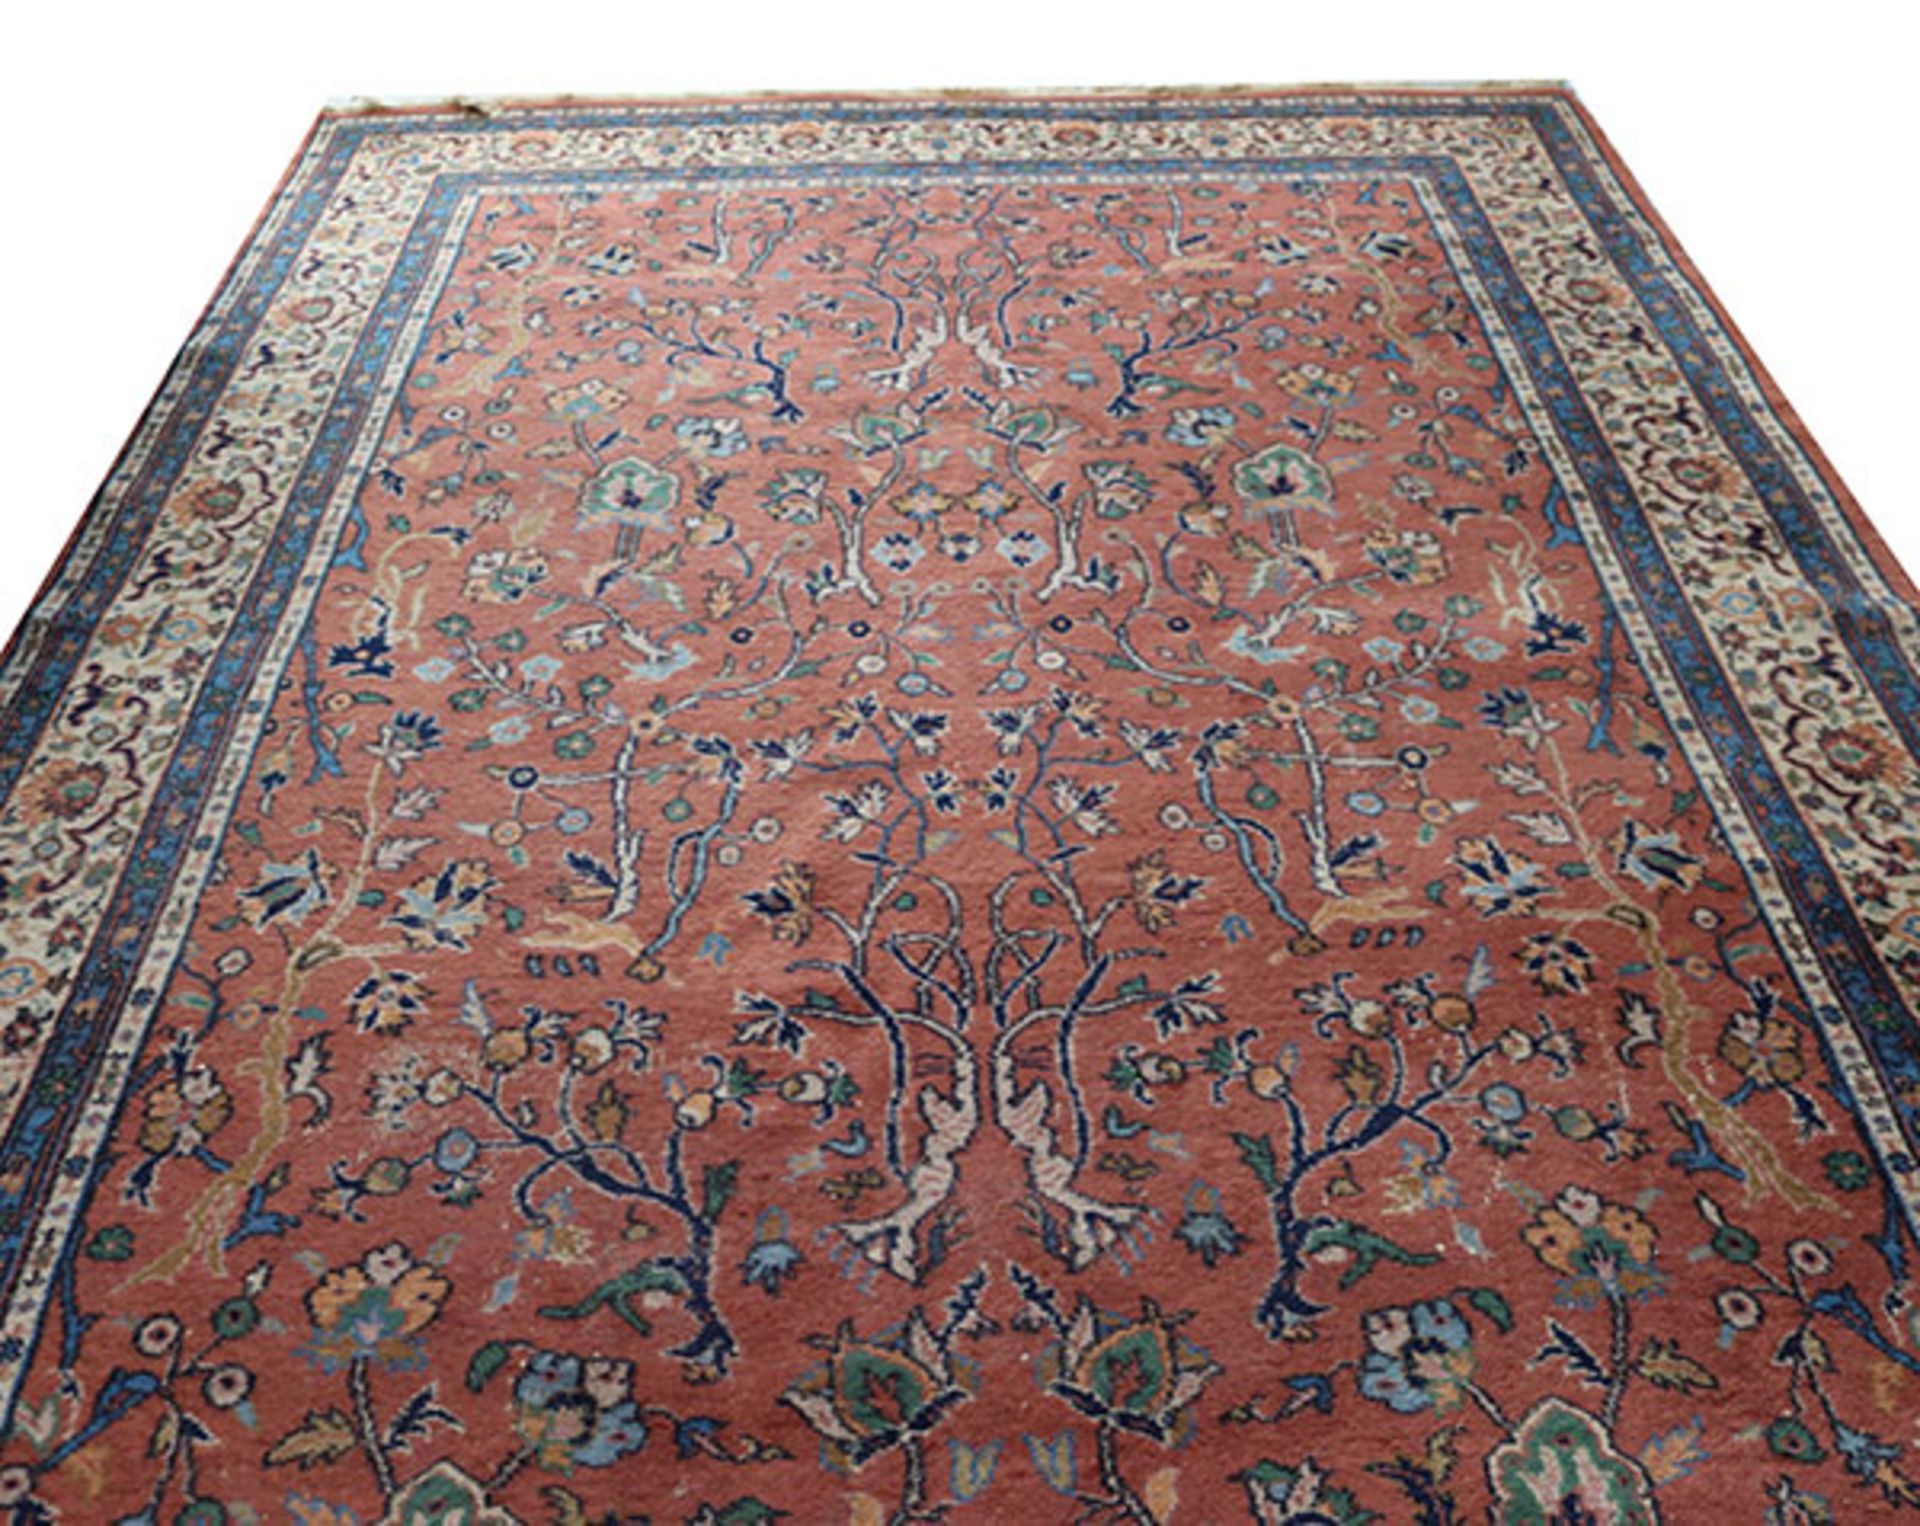 Teppich, rot/blau/beige, starke Gebrauchsspuren, teils beschädigt, 340 cm x 238 cm